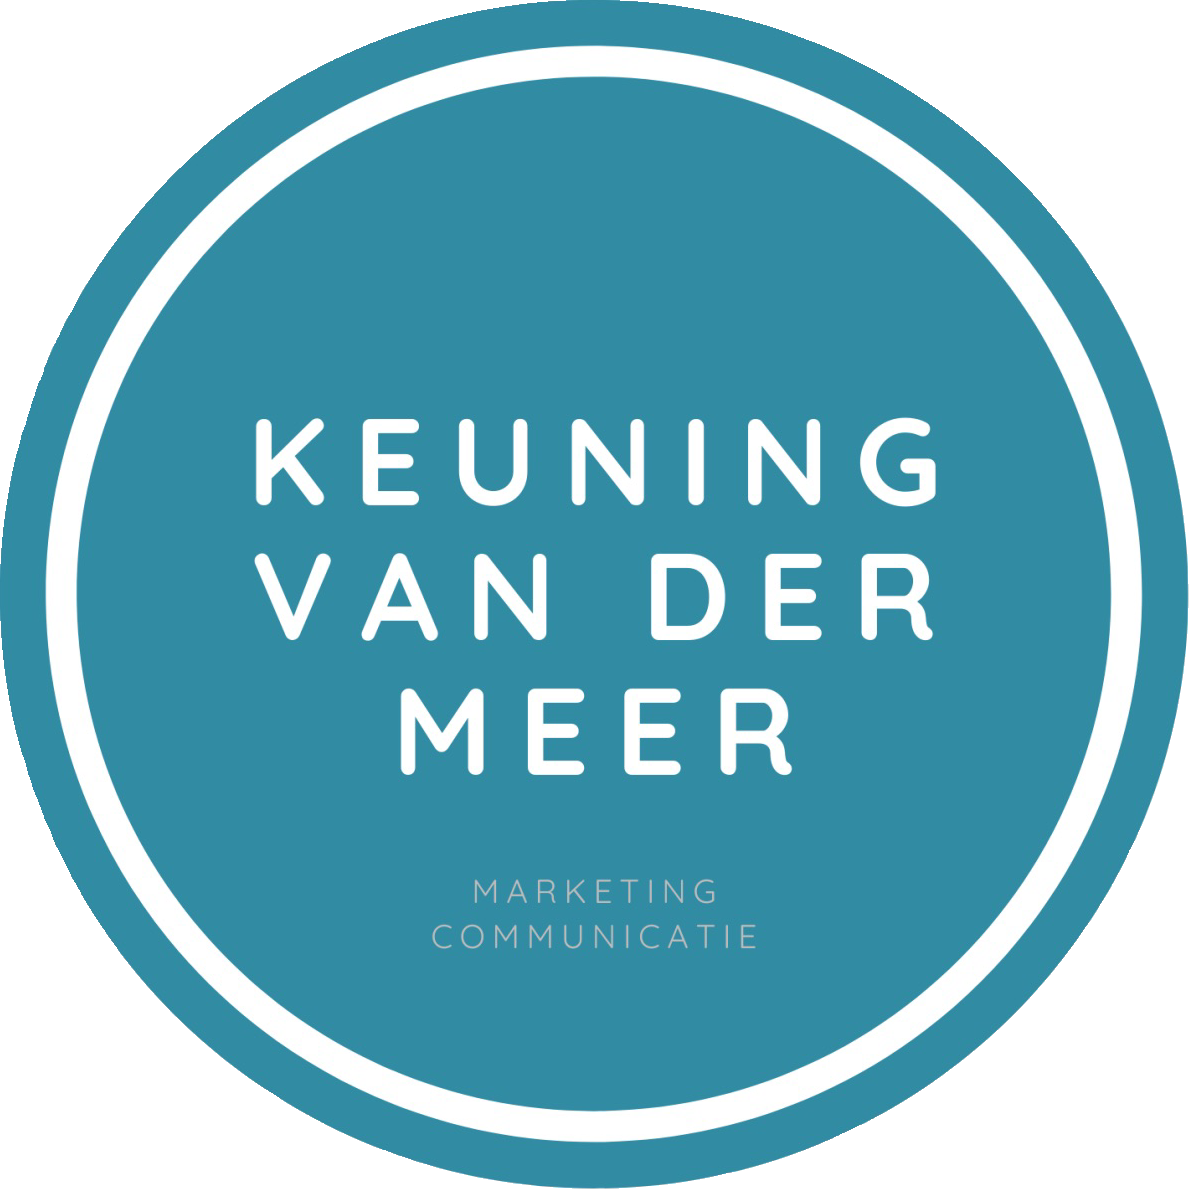 Keuning Van der Meer marketing communicatie